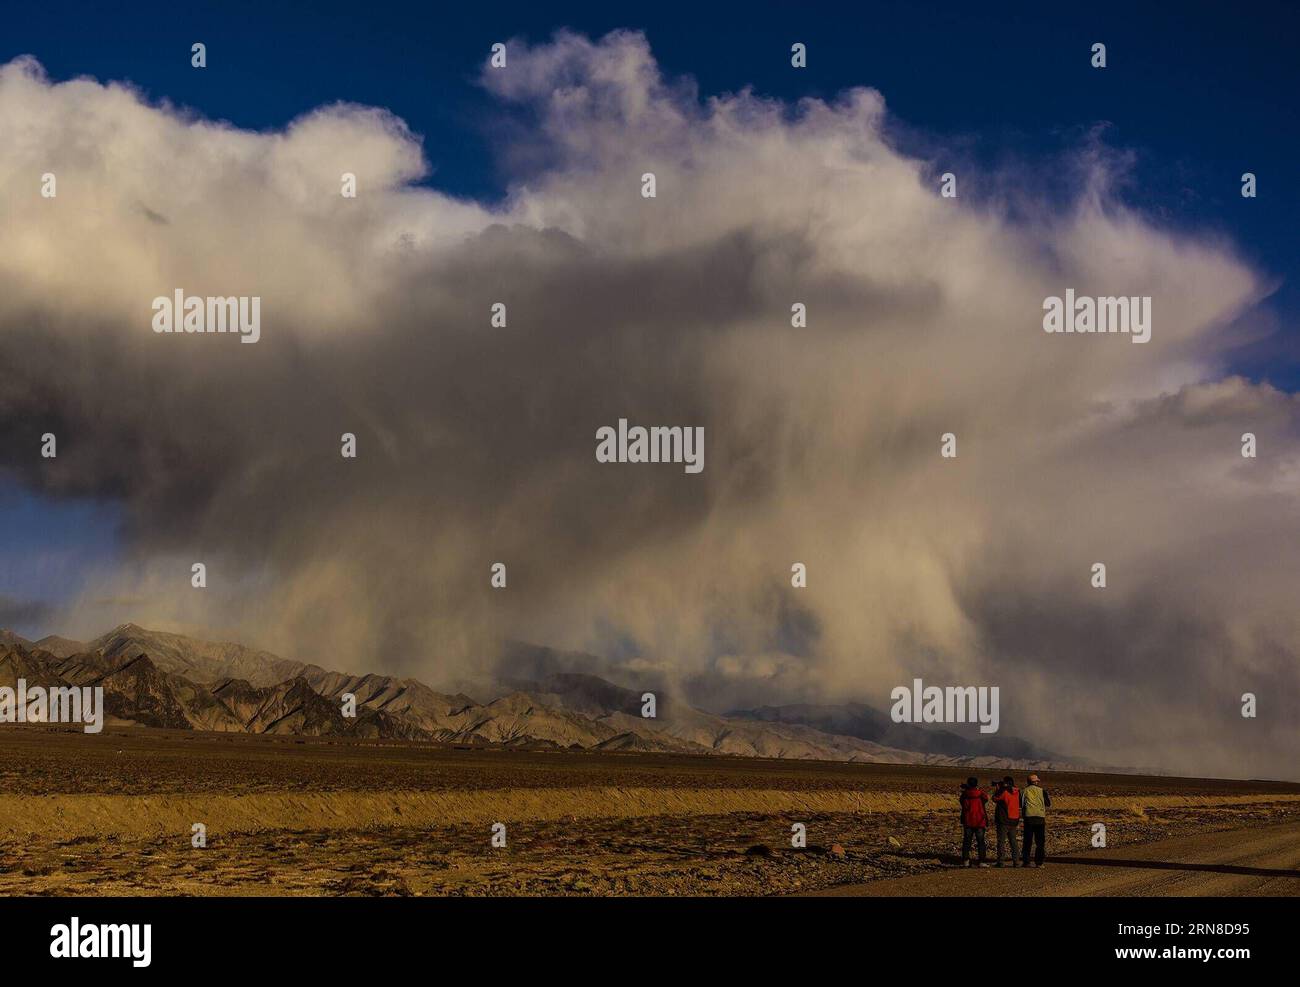 (151018) -- RUOQIANG, 18. Oktober 2015 -- Menschen machen Fotos im Altun Mountains Nature Reserve im Ruoqiang County, Nordwestchinas Autonome Region Xinjiang Uygur, 18. Oktober 2015. Das Reservat umfasst 45.000 Quadratkilometer und hat eine durchschnittliche Höhe von 4.500 Metern. Es ist die Heimat einer Vielzahl seltener und gefährdeter Tiere, darunter wilde Esel, Antilopen, wilde Yaks, Schneeleoparden und so weiter. Darüber hinaus ist das Reservat das erste spezialisierte Reservat für das Ökosystem der Plateauwüste der Welt. Song Zhenping) (yxb) CHINA-ALTUN BERGWELT (CN) ShenxQiao PUBLICATIONxNOTxINxCHN Ruoqiang Stockfoto